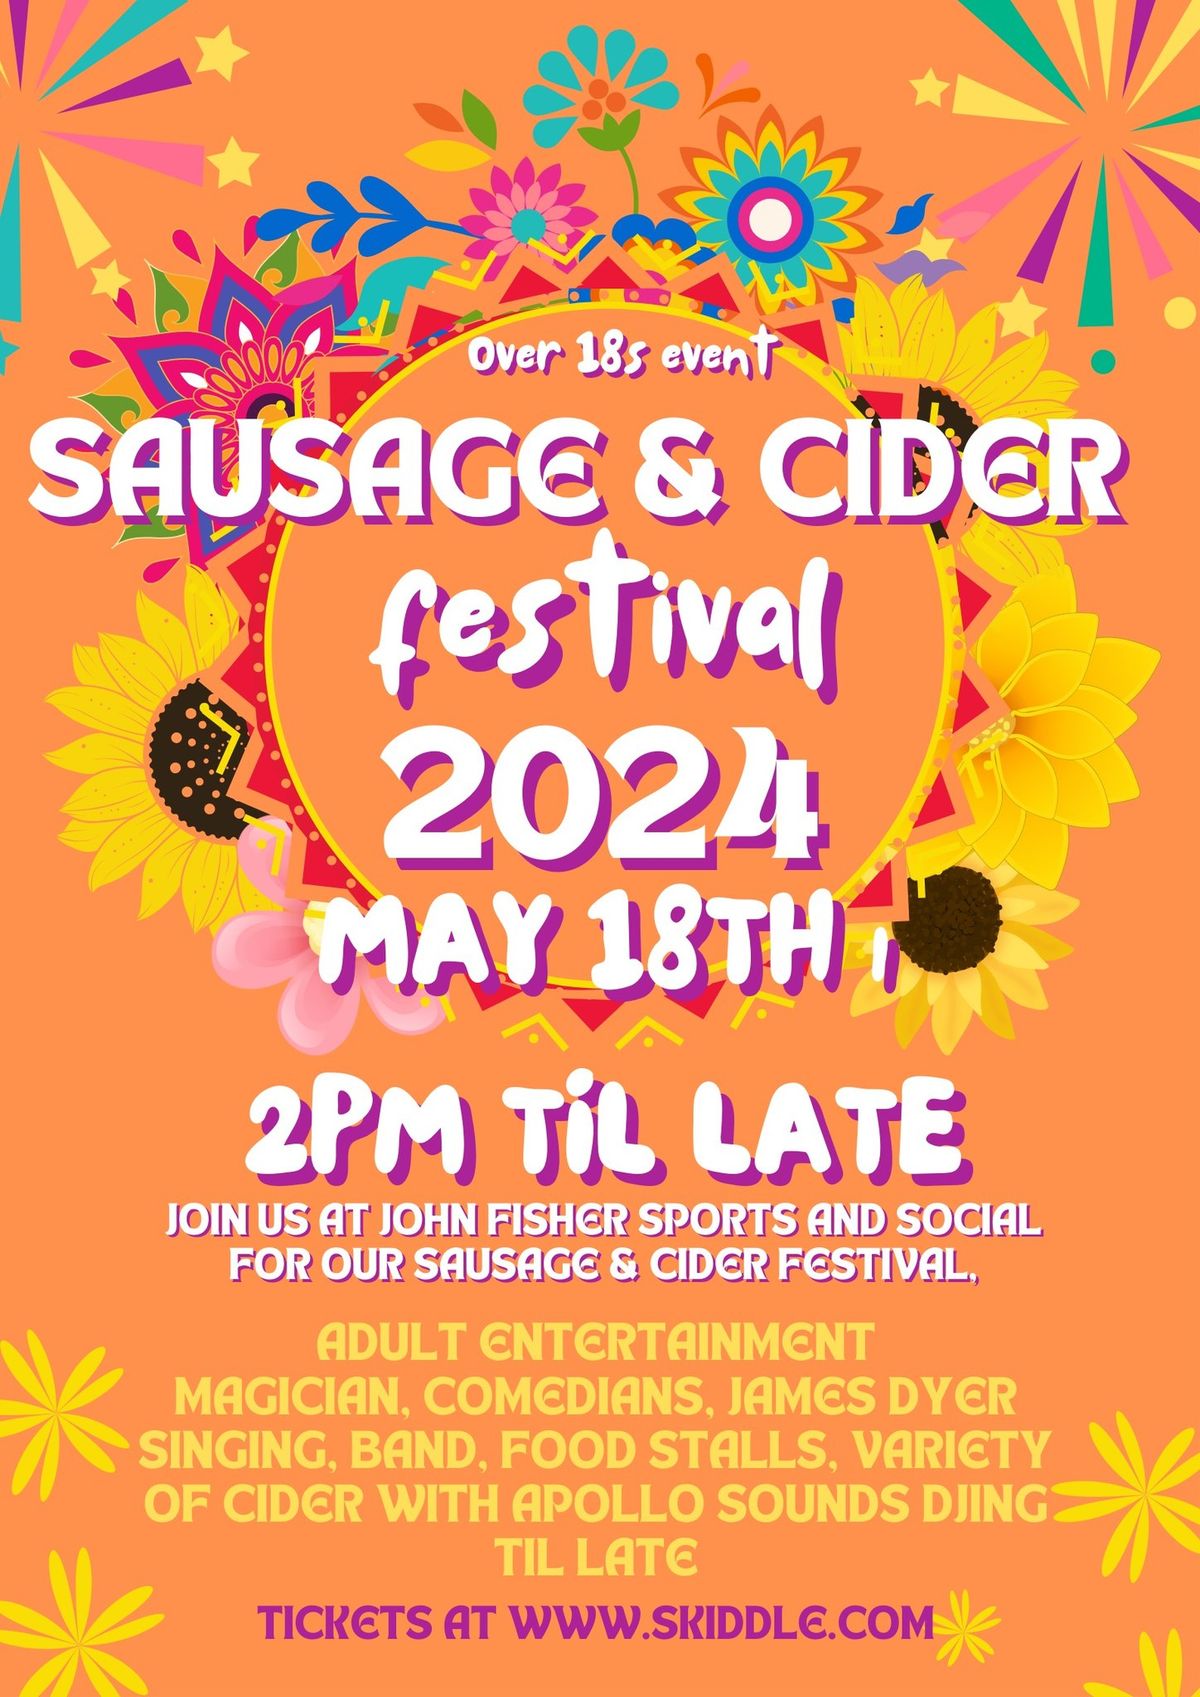 Warlingham Sausage & Cider Festival